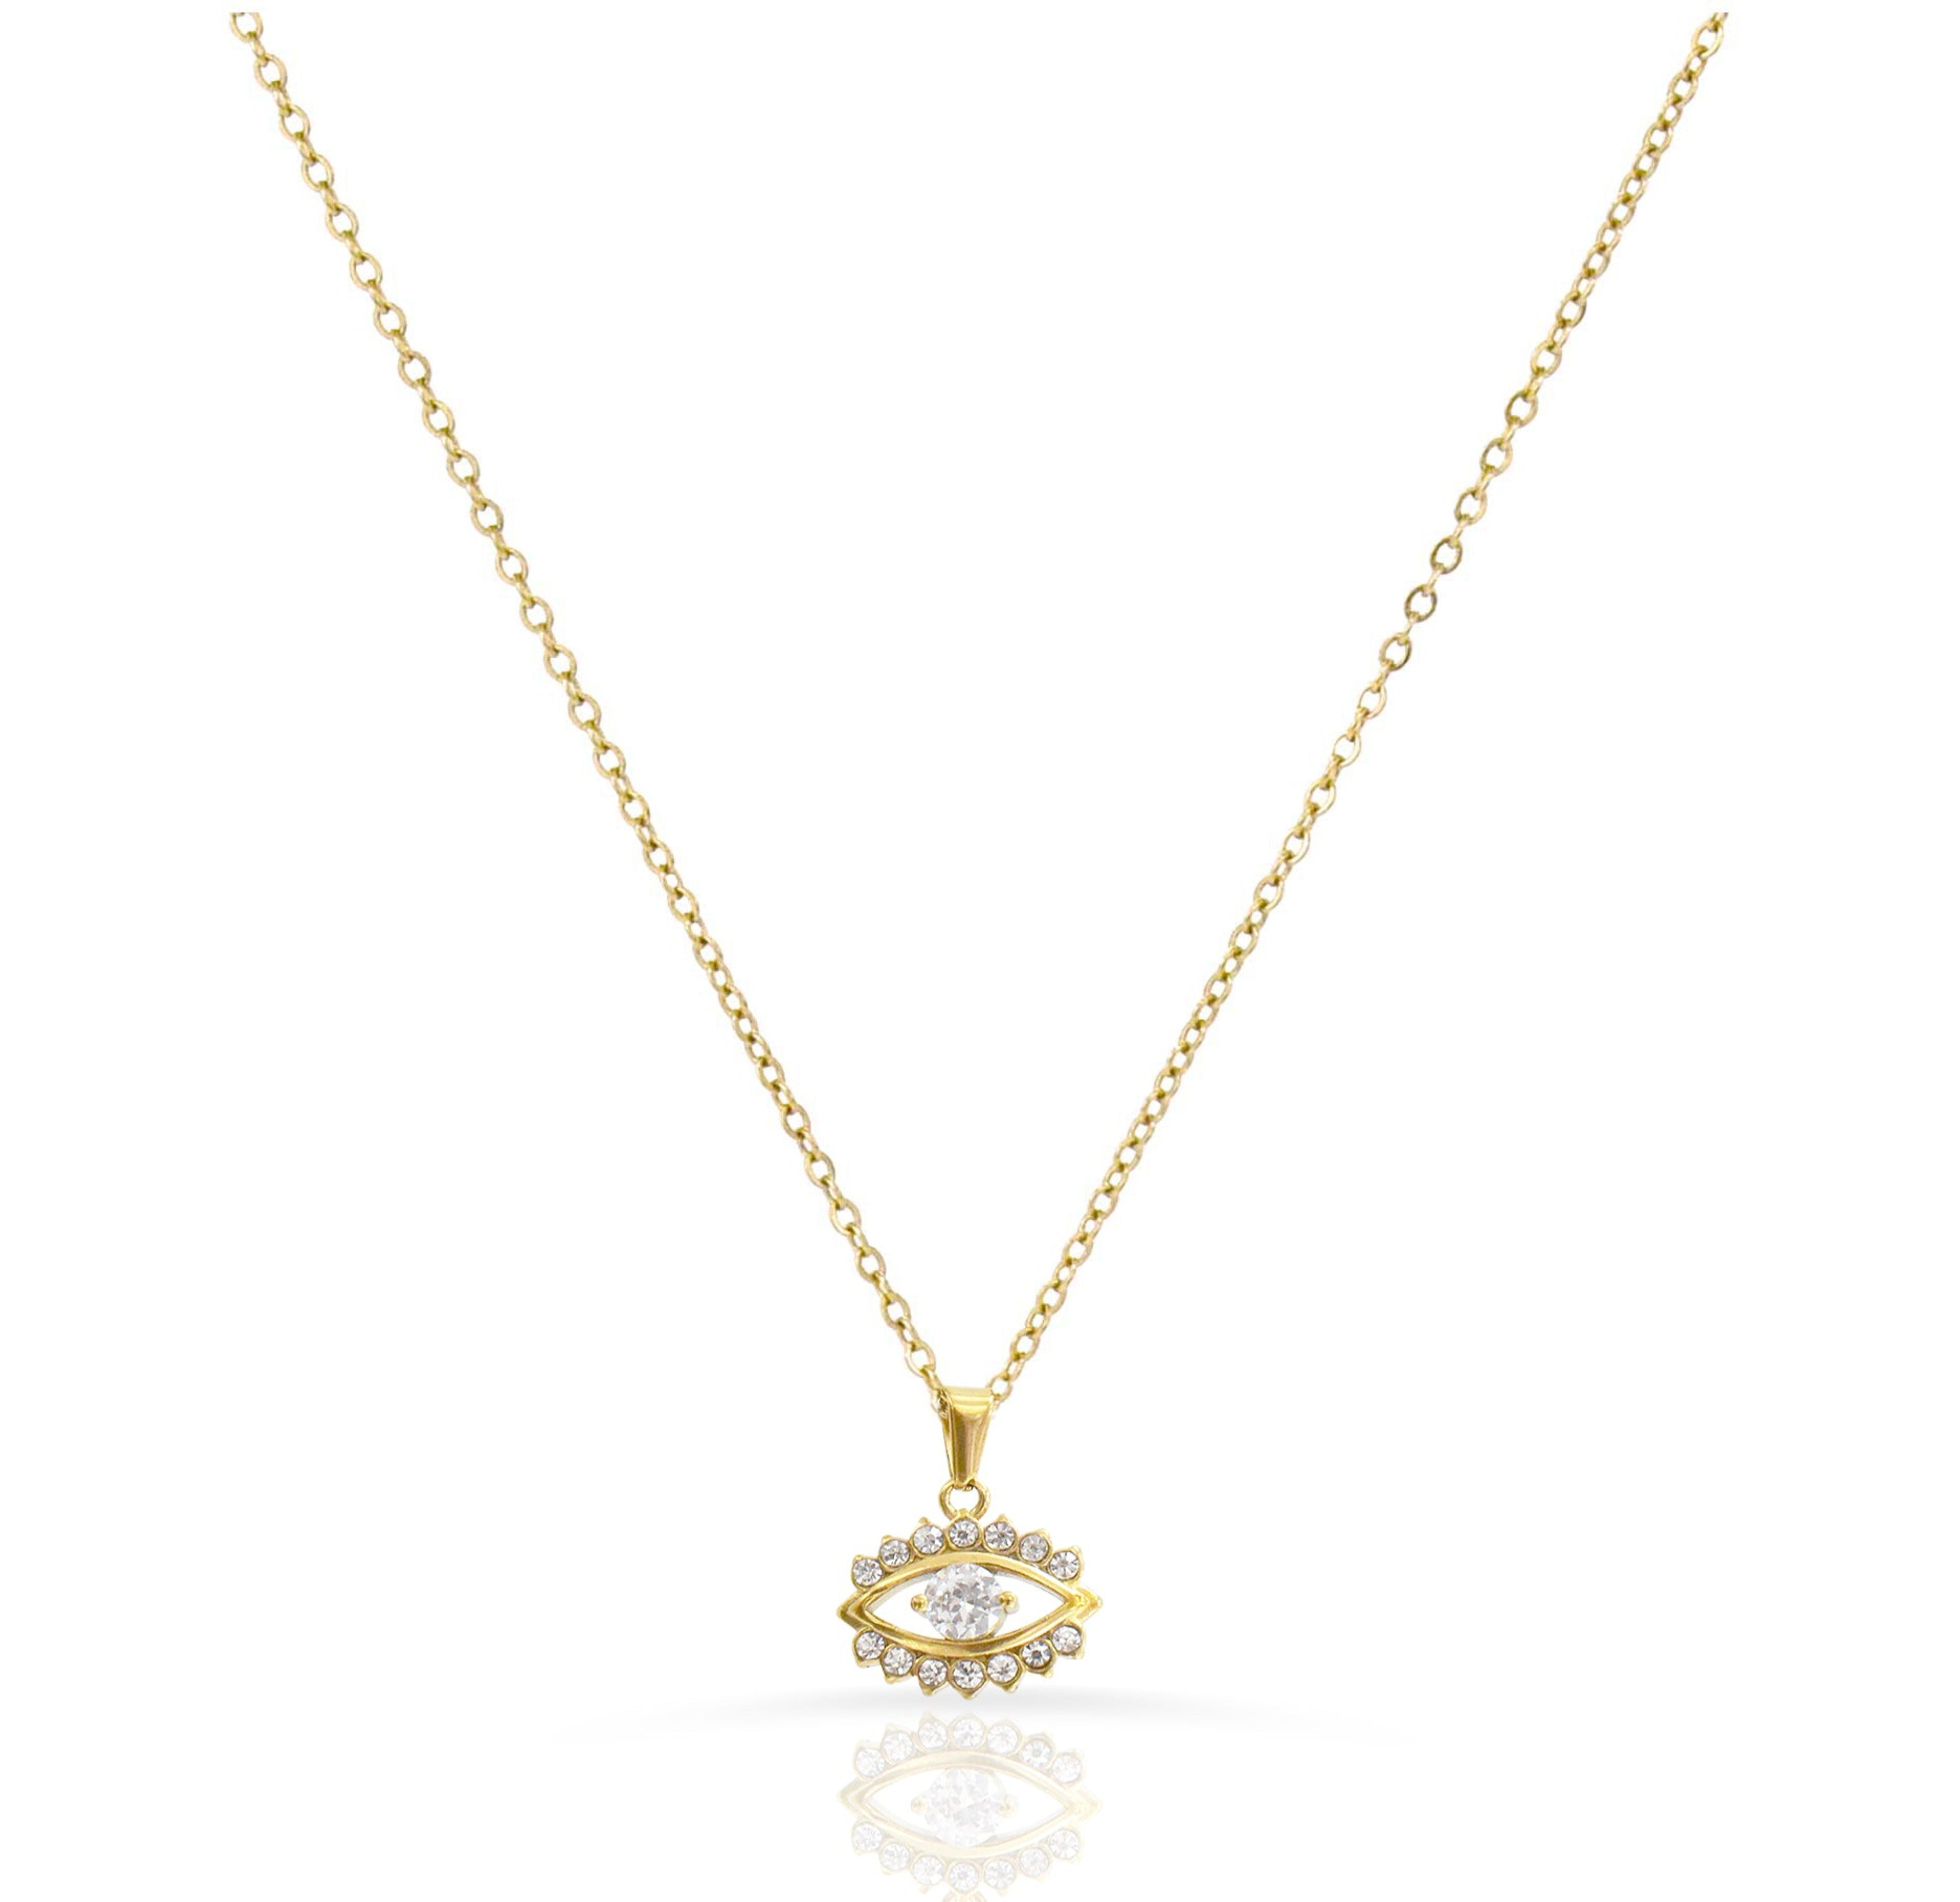 evil eye necklace gold waterproof jewelry